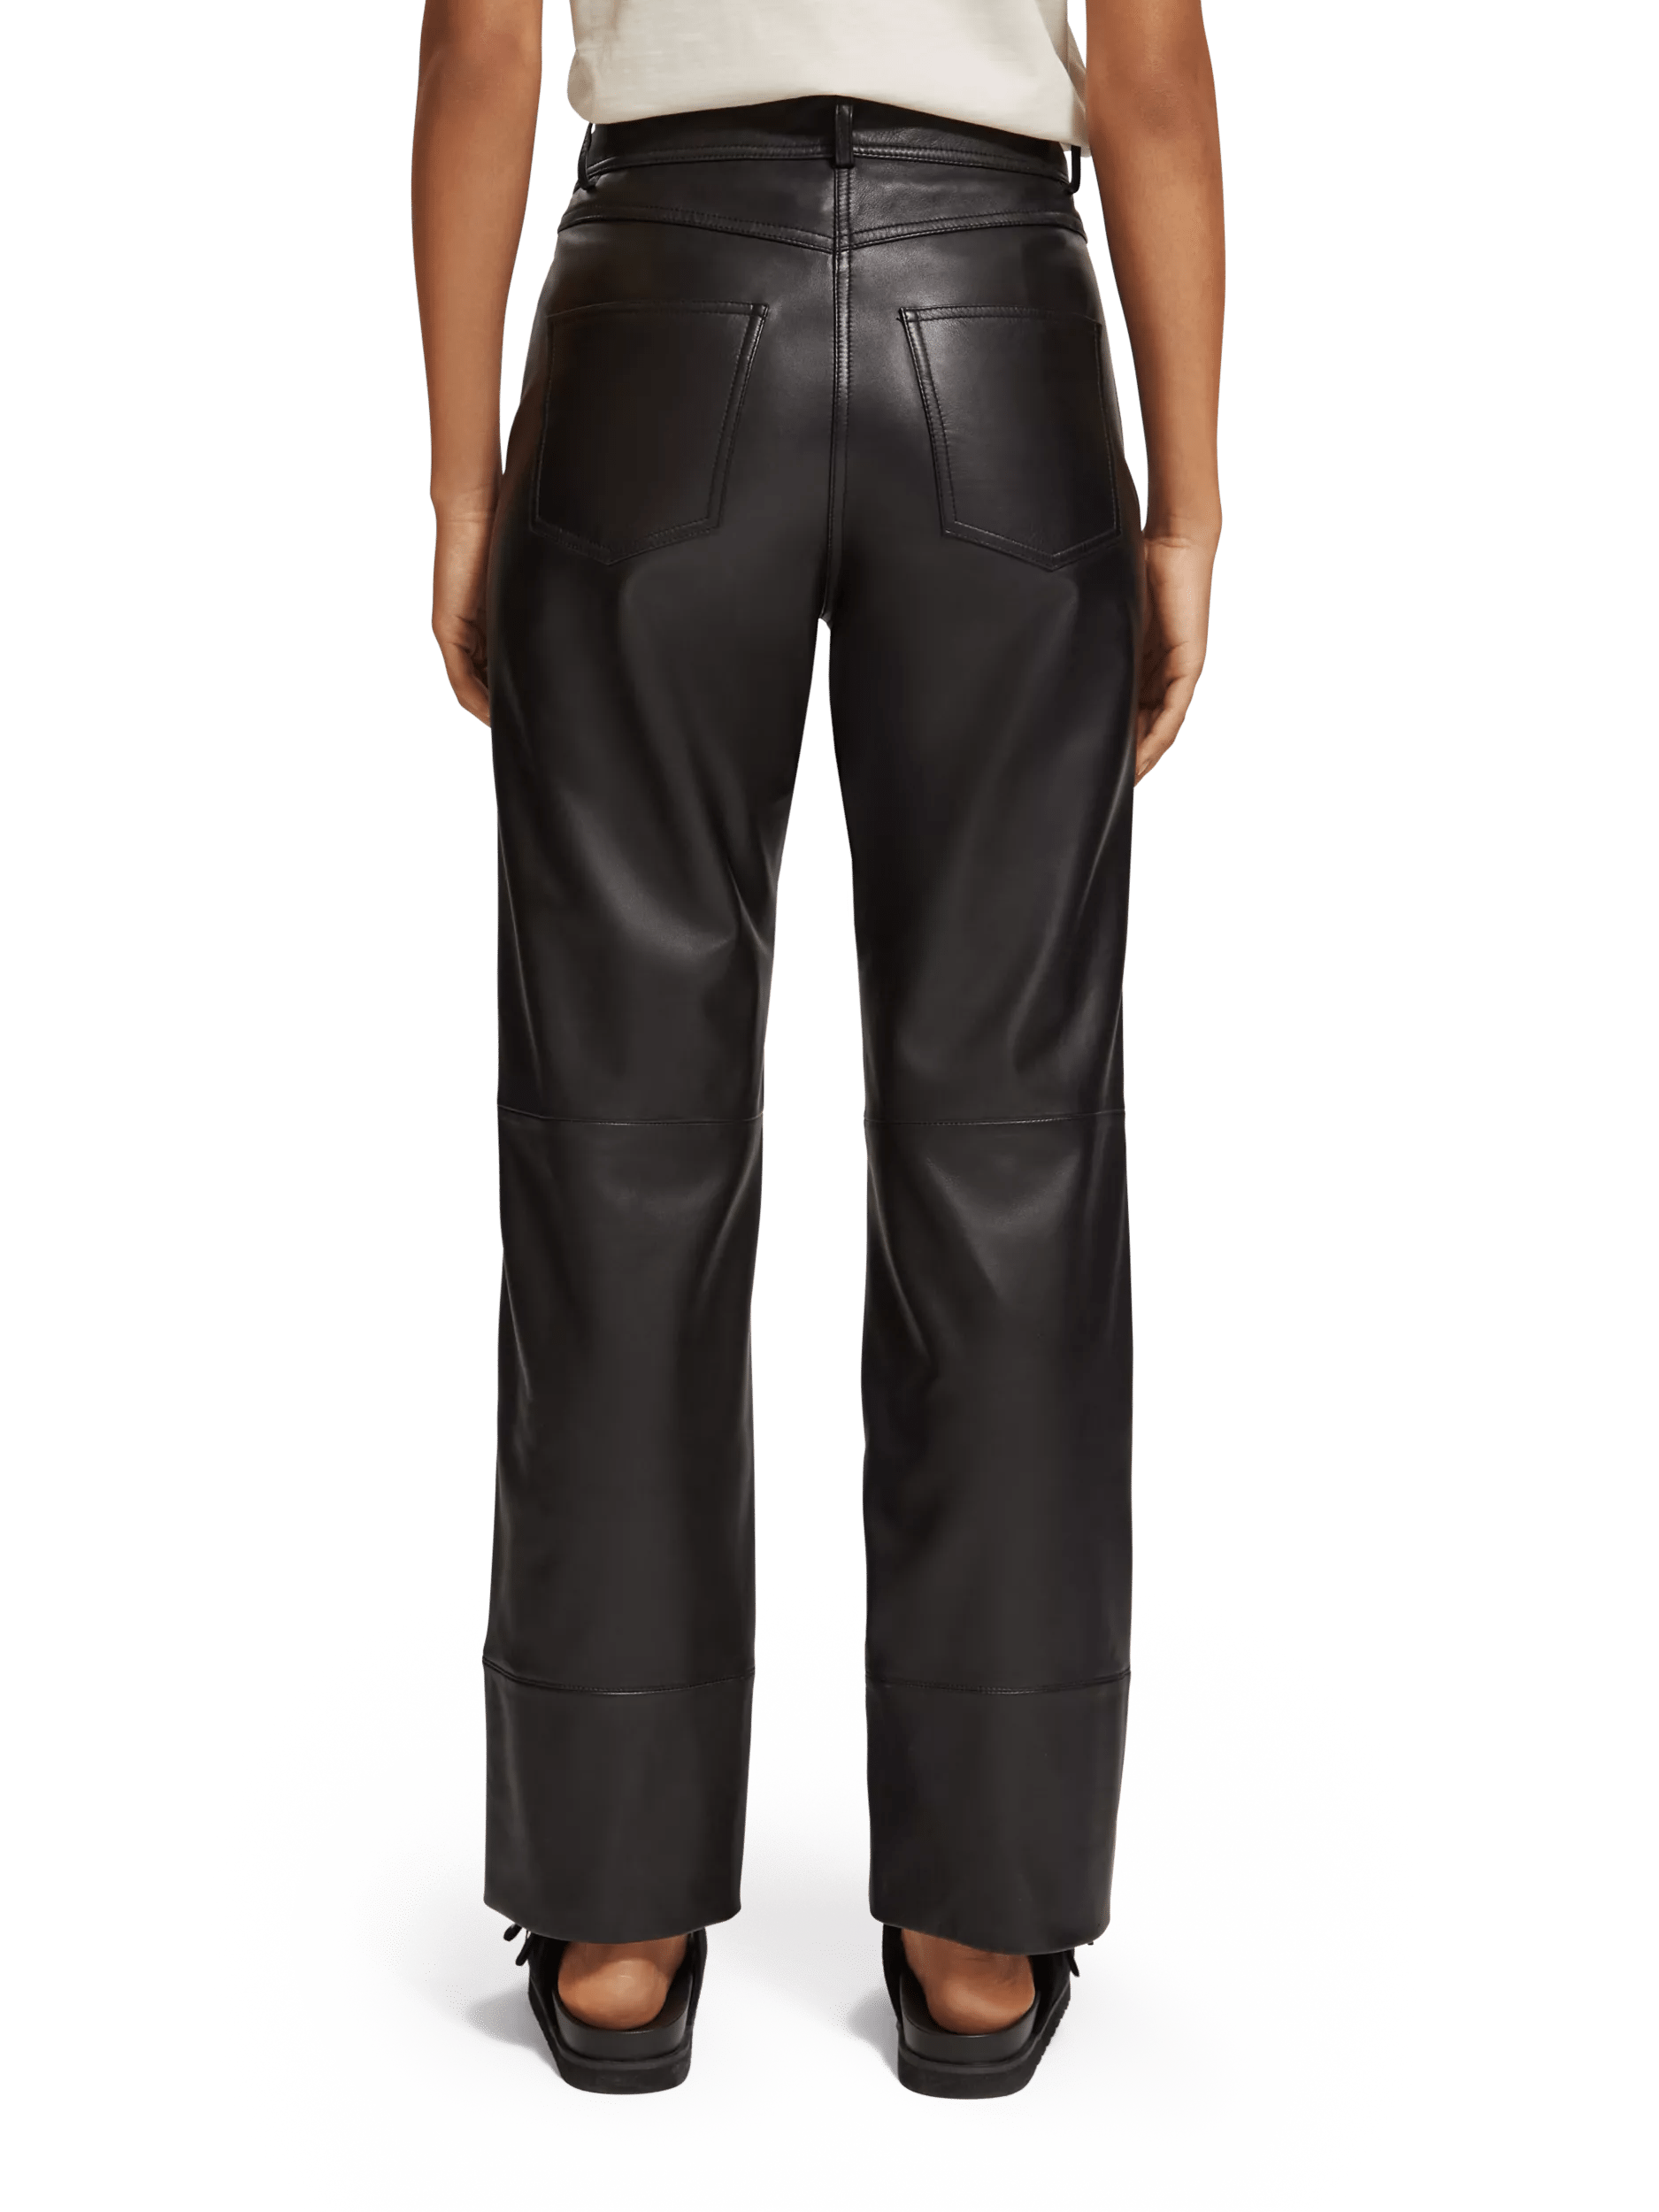 Scotch & Soda Leren broek met rechte pijpen, hoge taille FIT-BCK